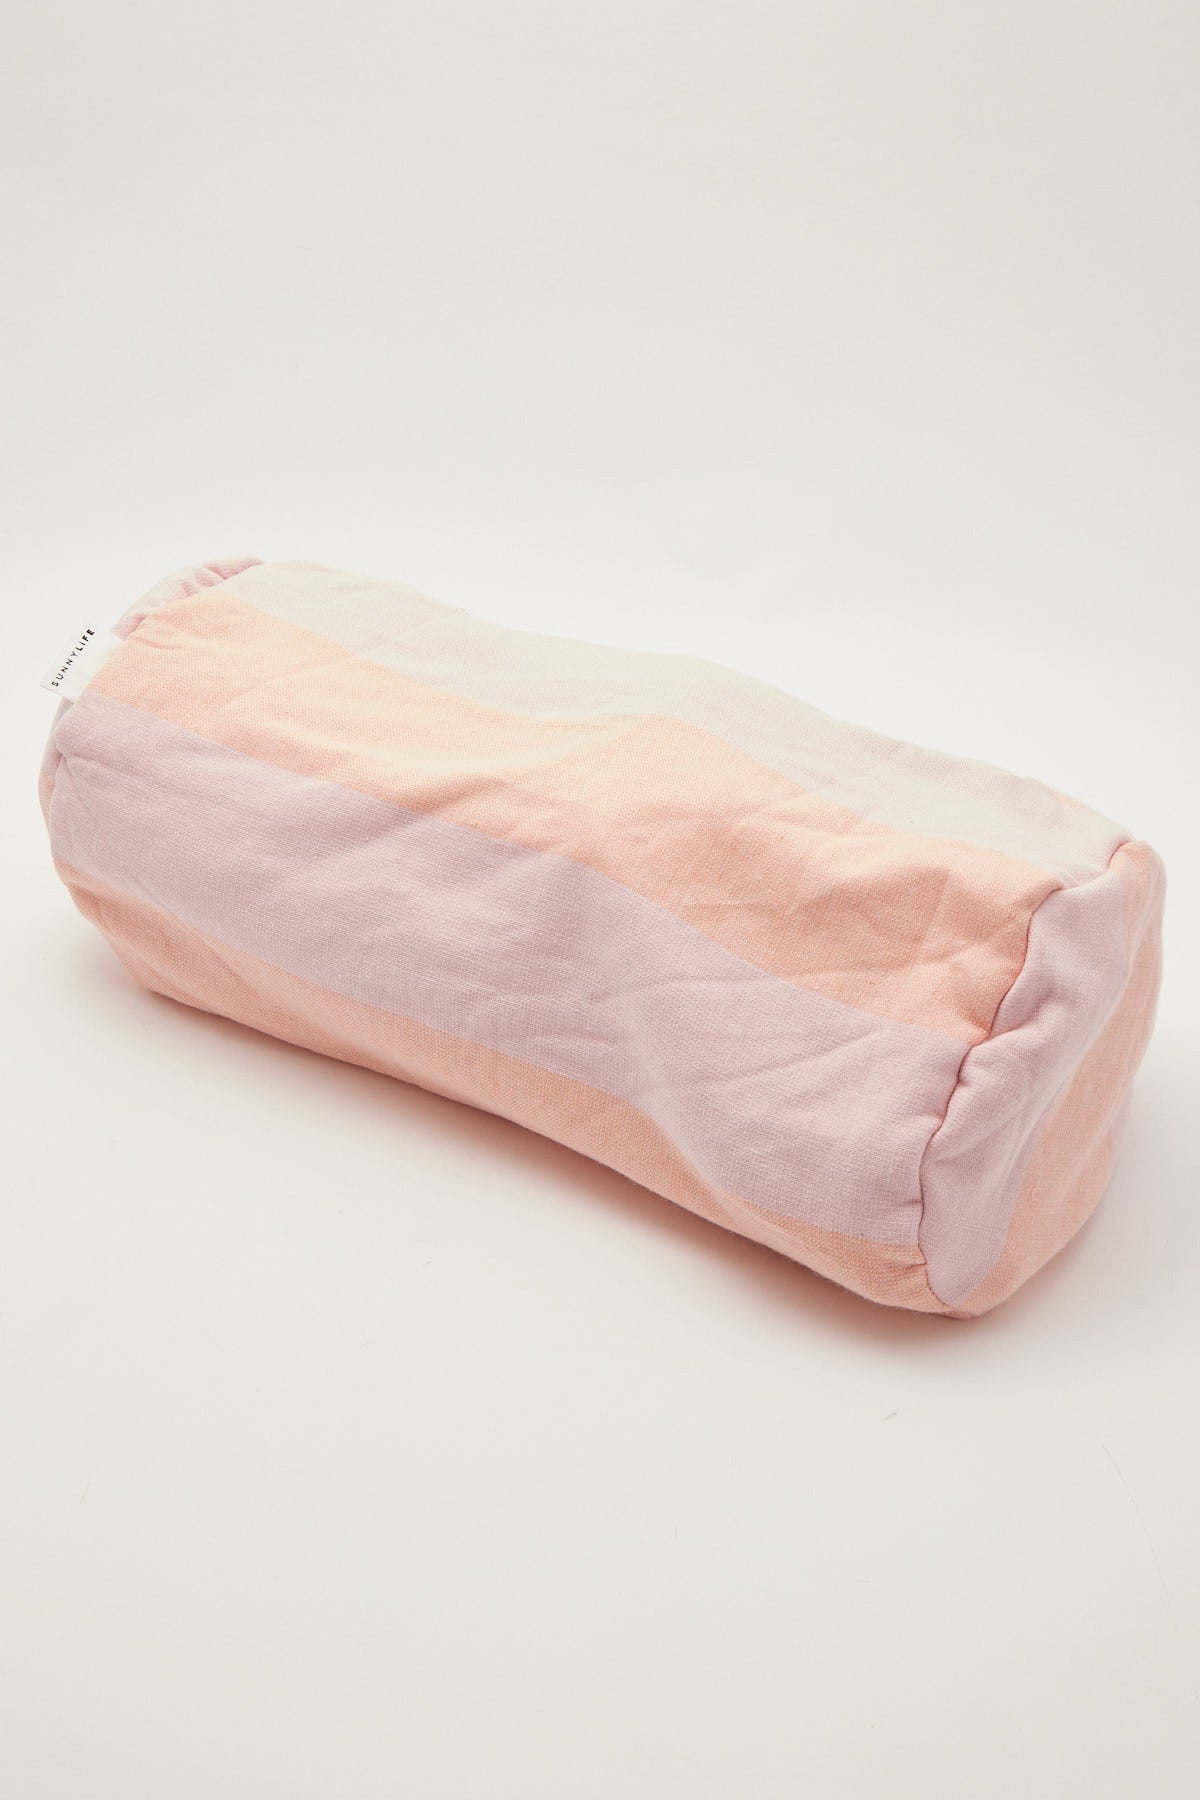 Sunnylife Beach Pillow Pink Melon